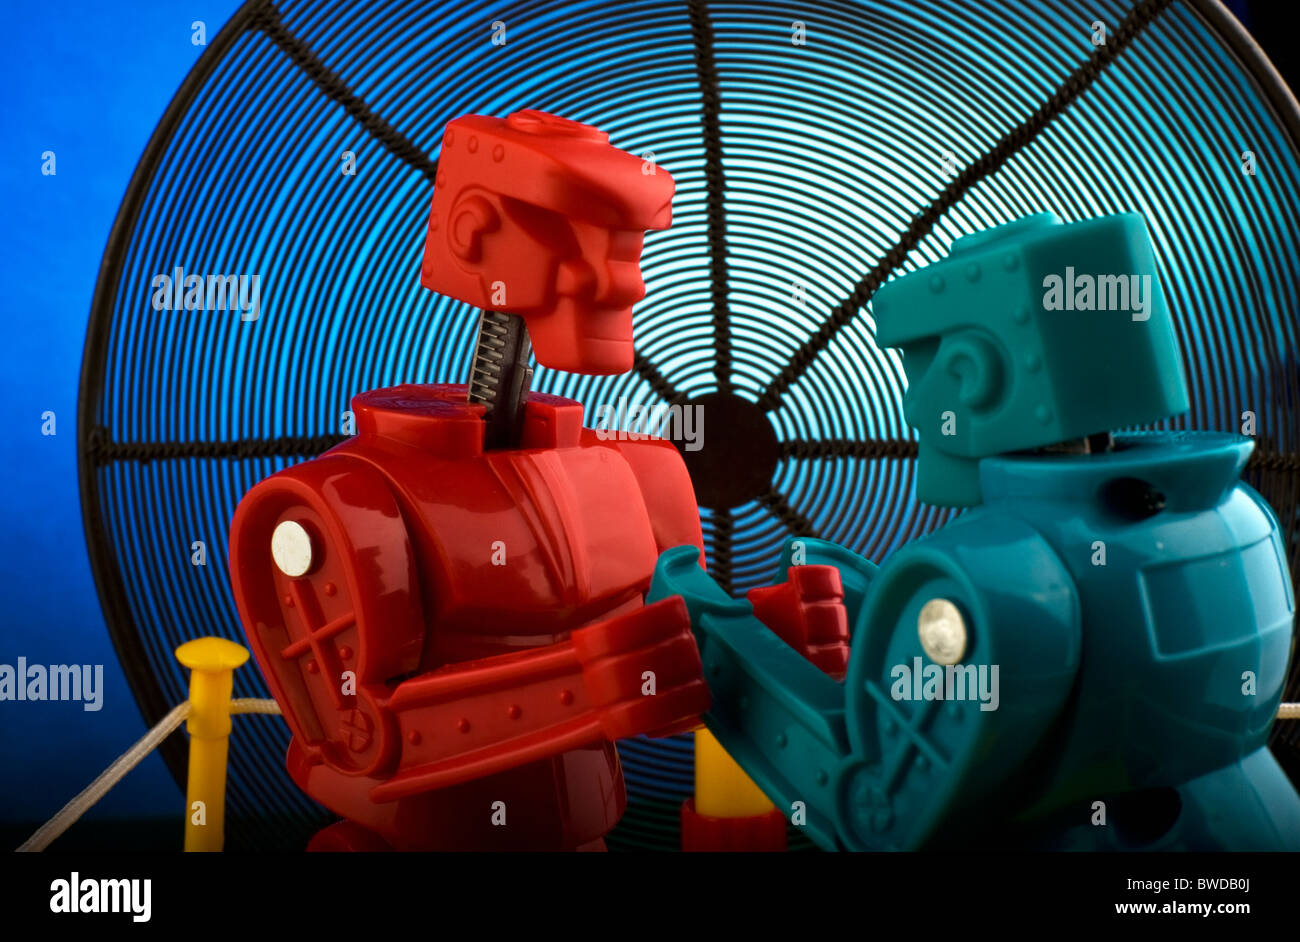 Boxing robots immagini e fotografie stock ad alta risoluzione - Alamy